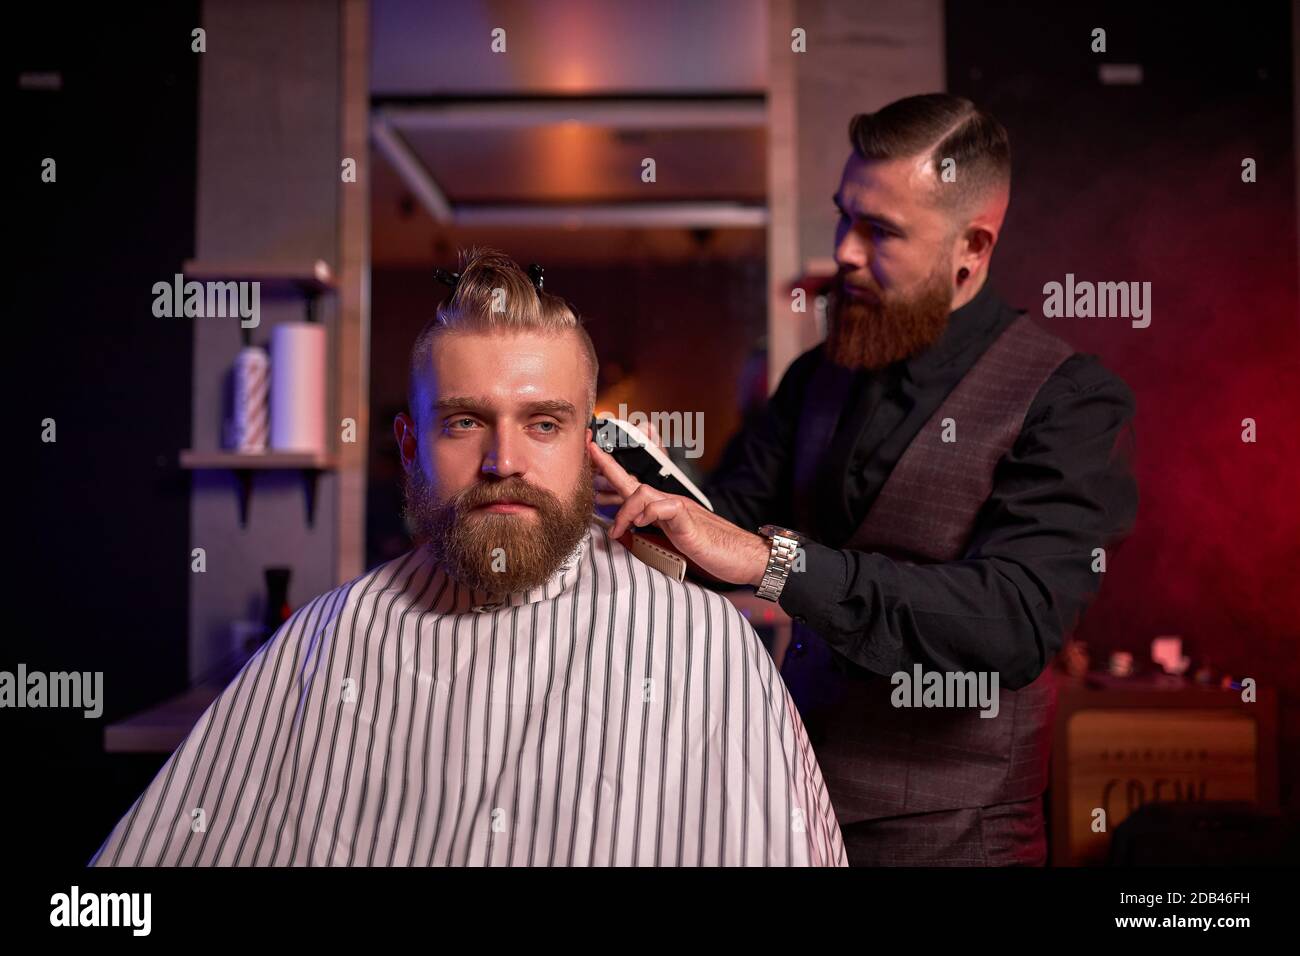 taglio capelli al parrucchiere, in salone. barbiere maschio tagli i capelli sulla testa del bel giovane cliente, il processo di creazione di acconciature per gli uomini da professionista Foto Stock